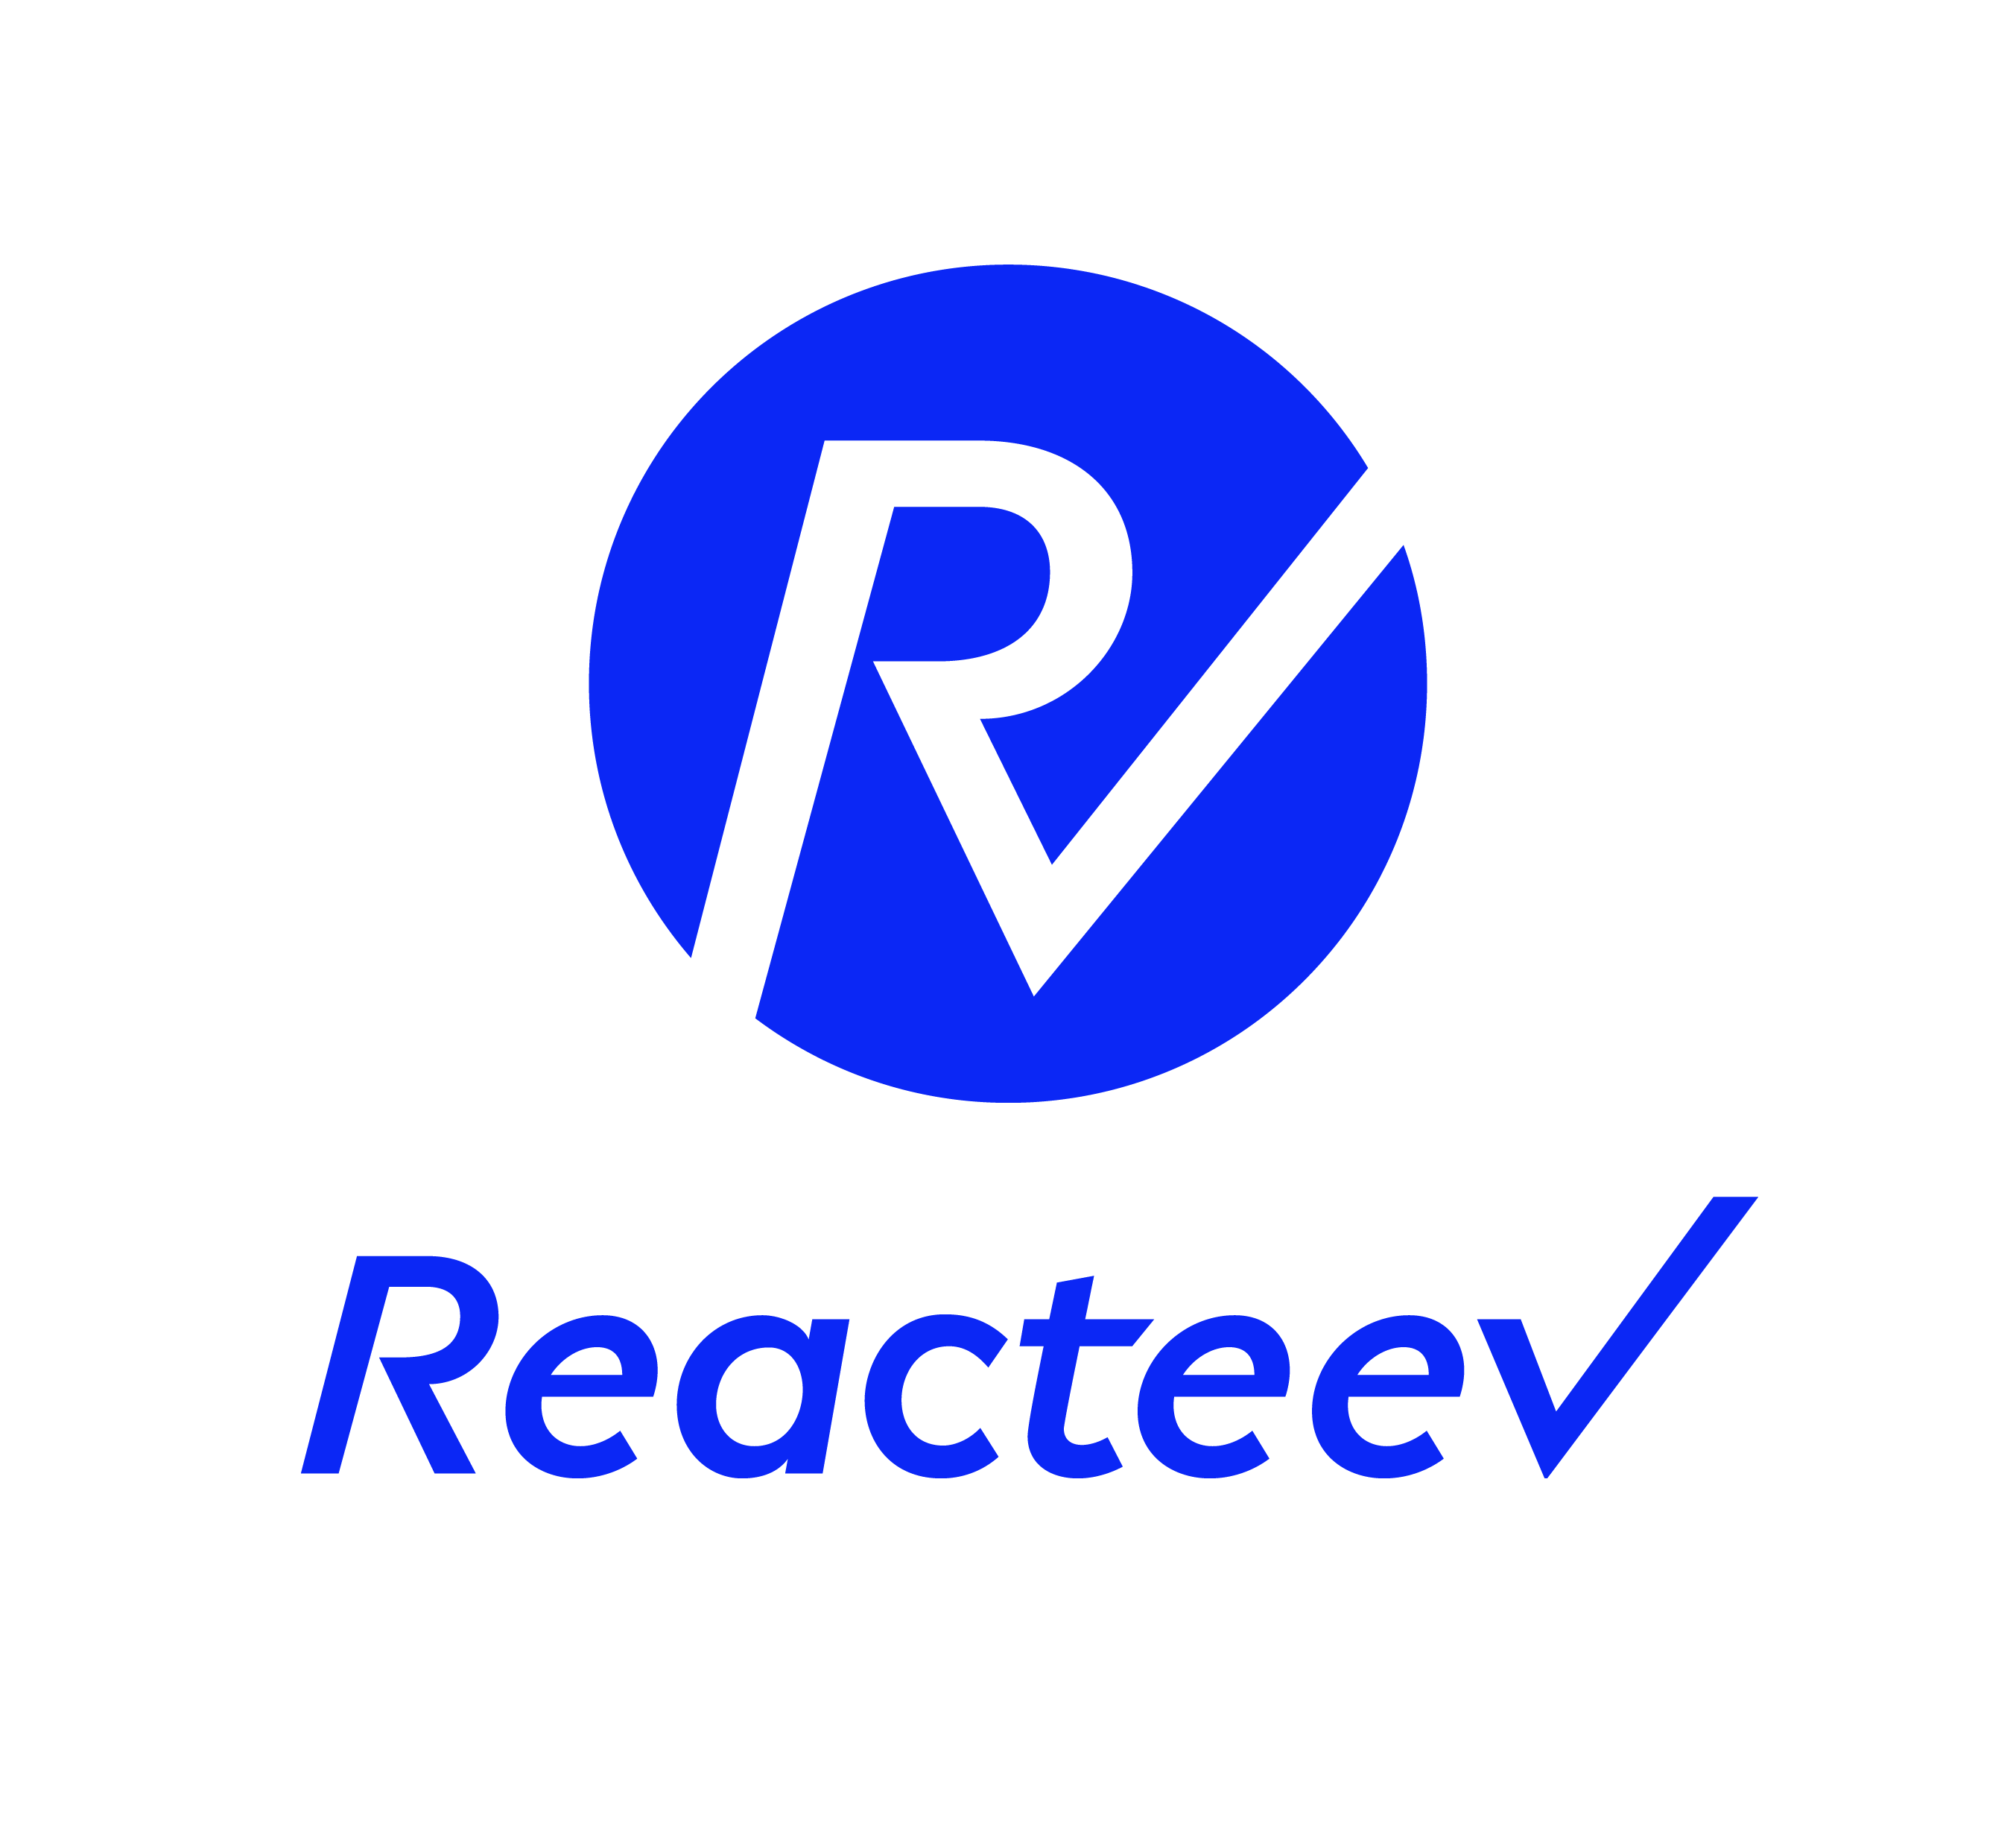 Reacteev